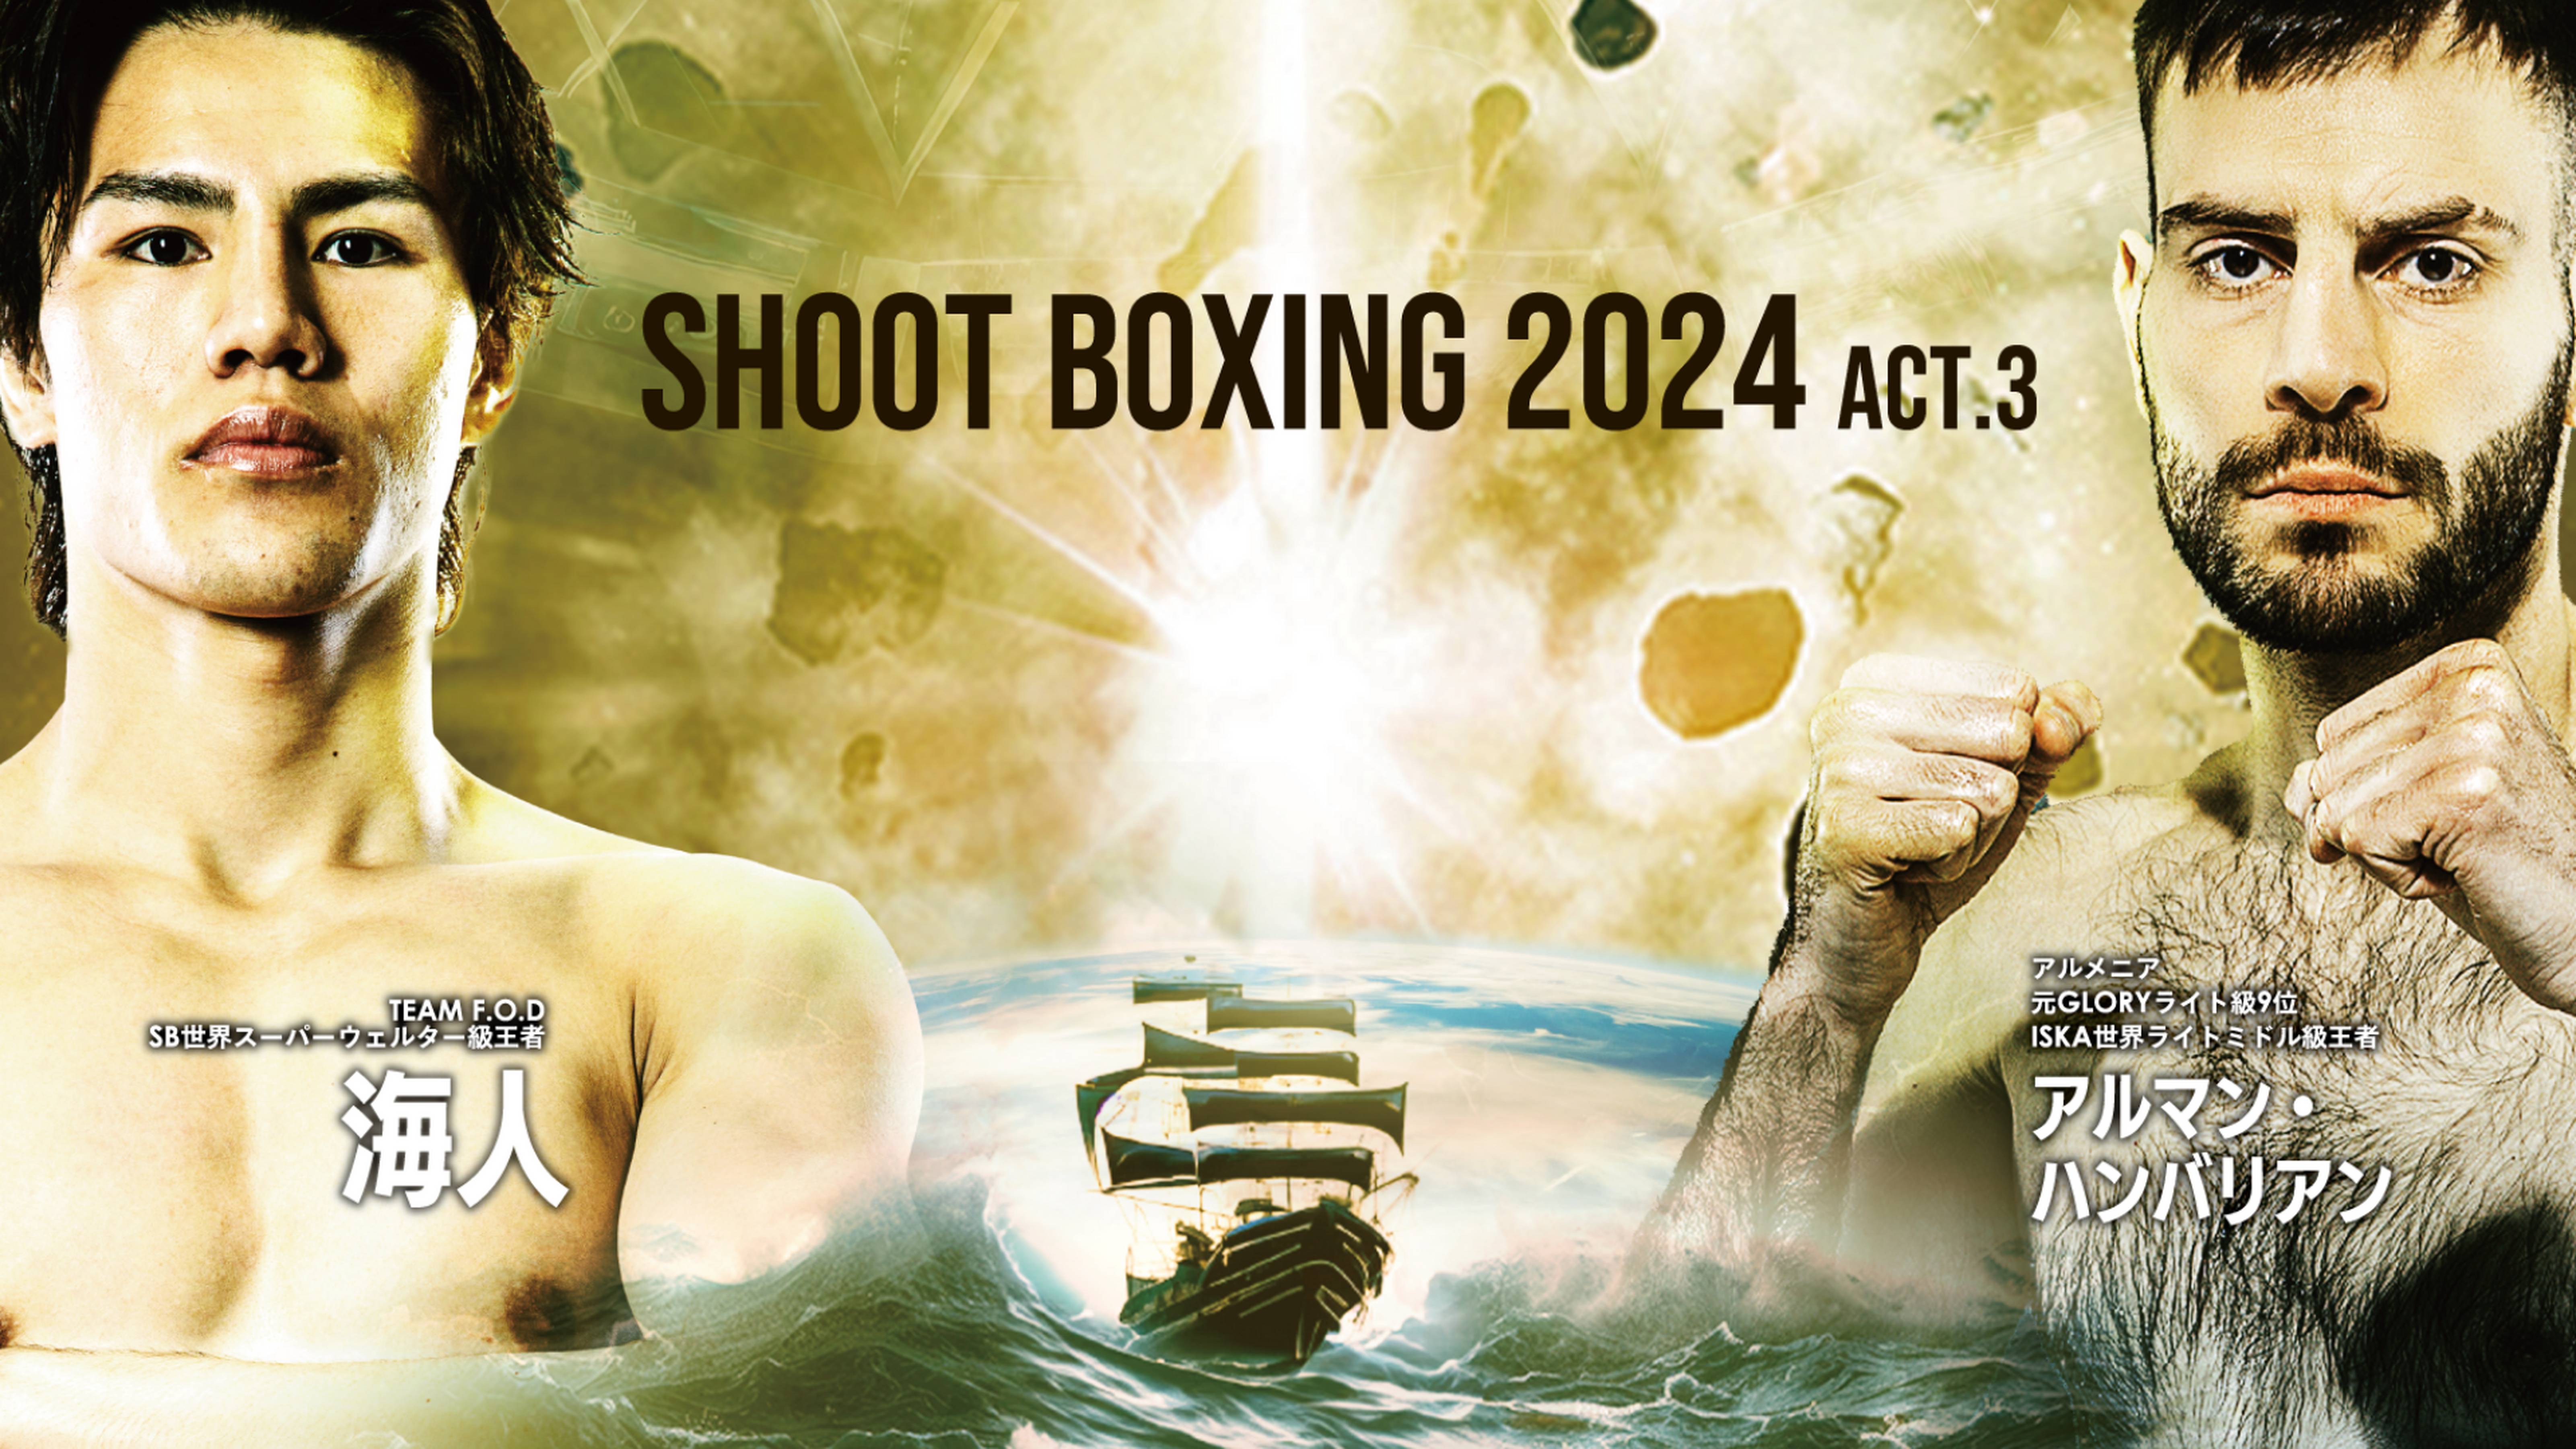 SHOOT BOXING 2024 act.3